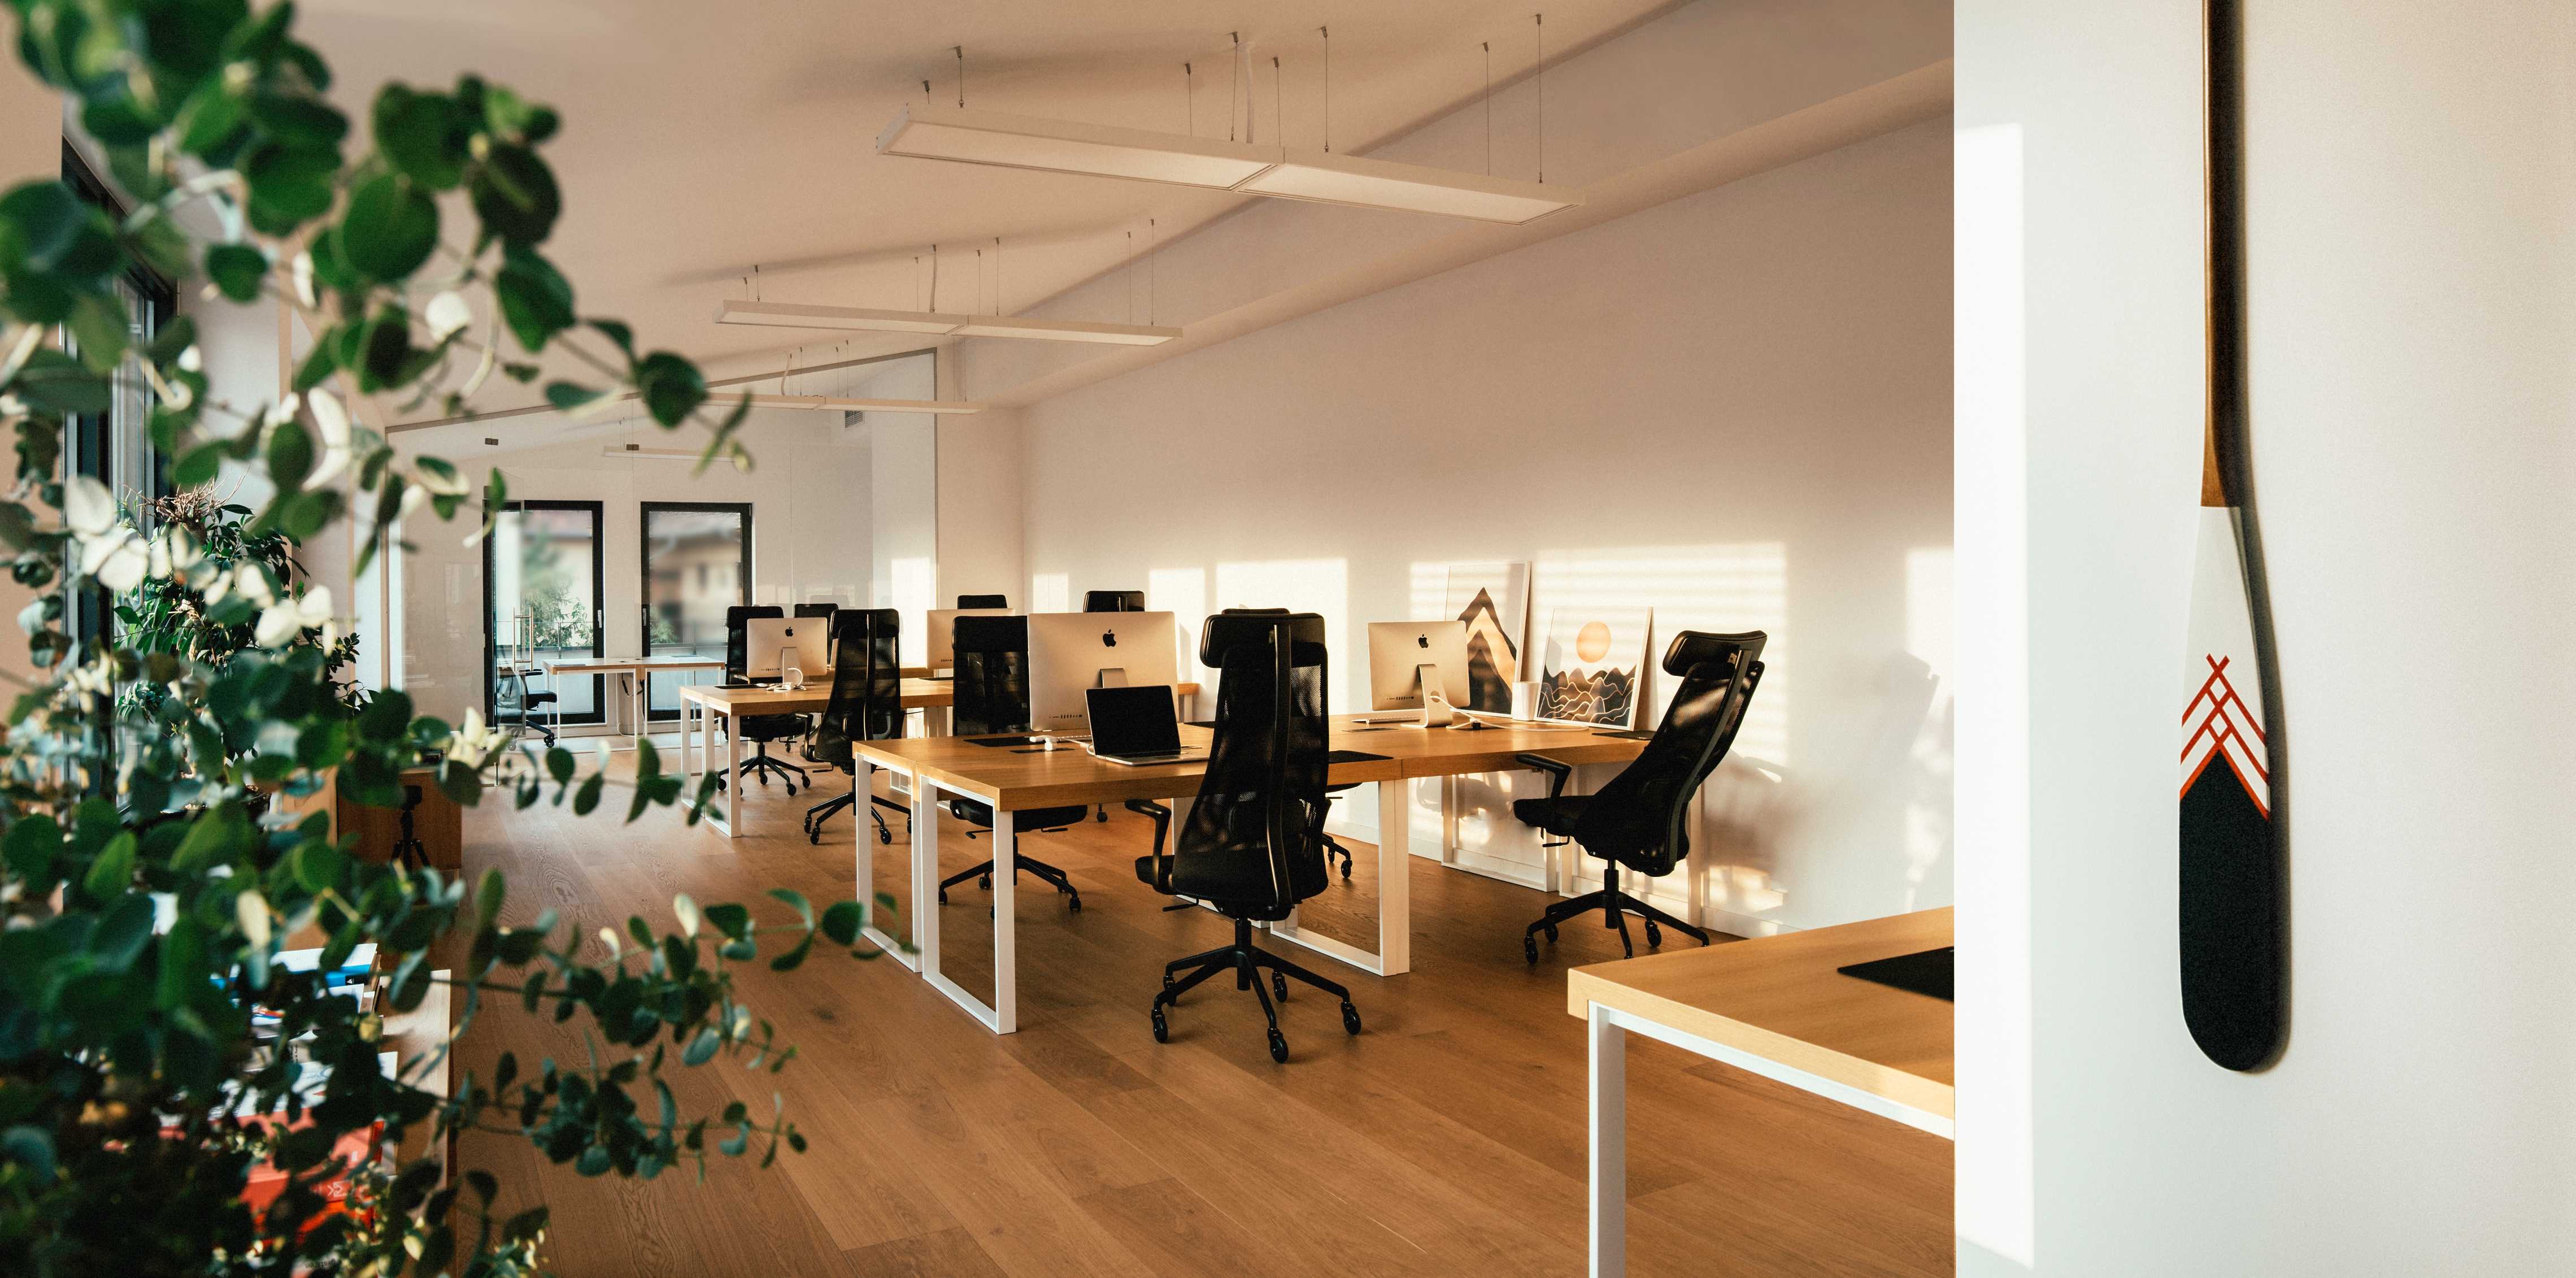 Sala donde los diseñadores de interfaces de usuario crean diseños de productos digitales